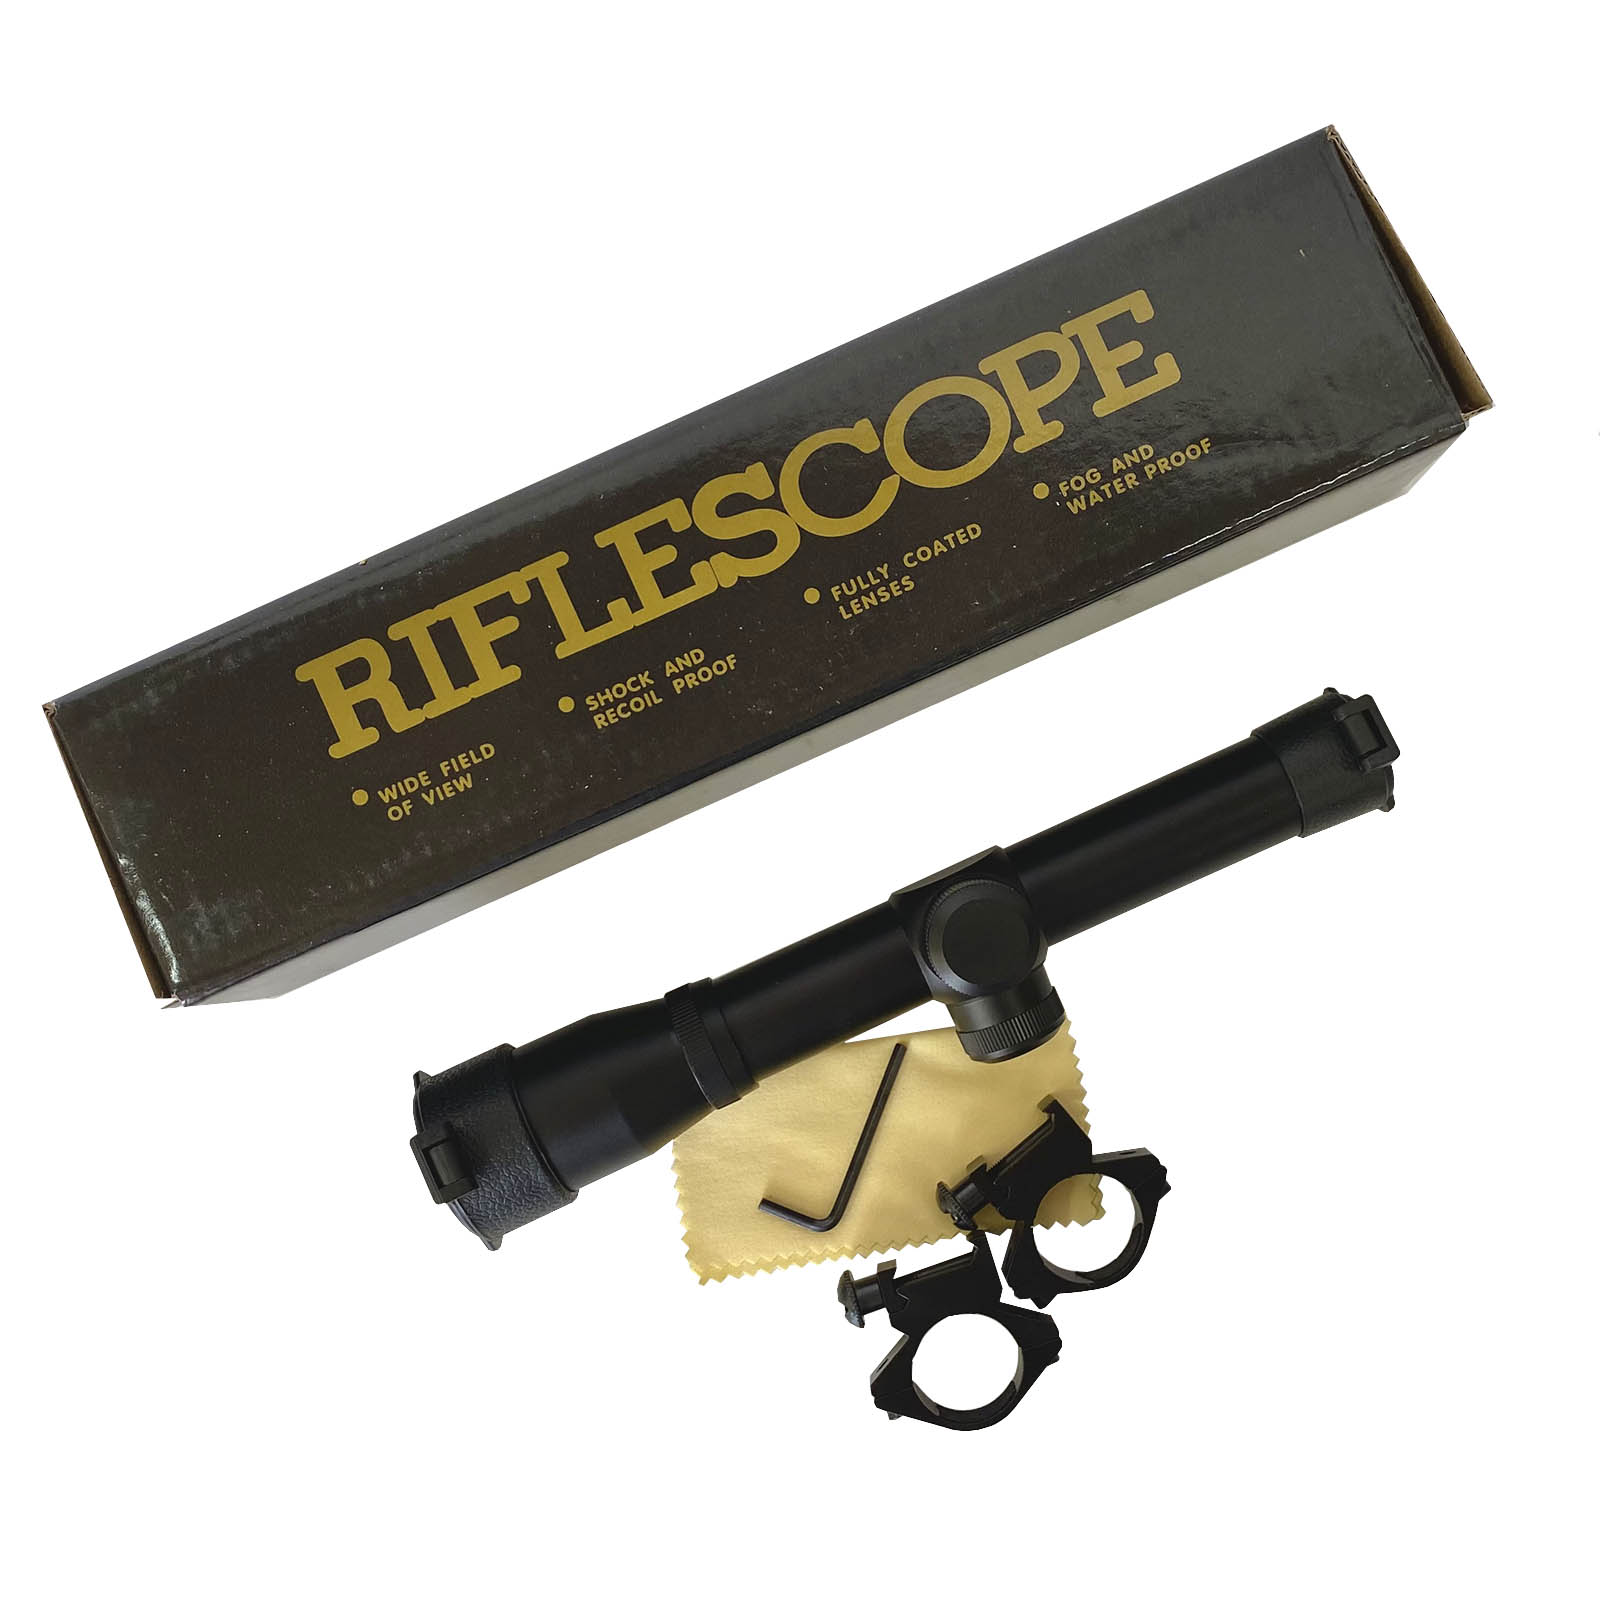 Надёжный оптический прицел Riflescope